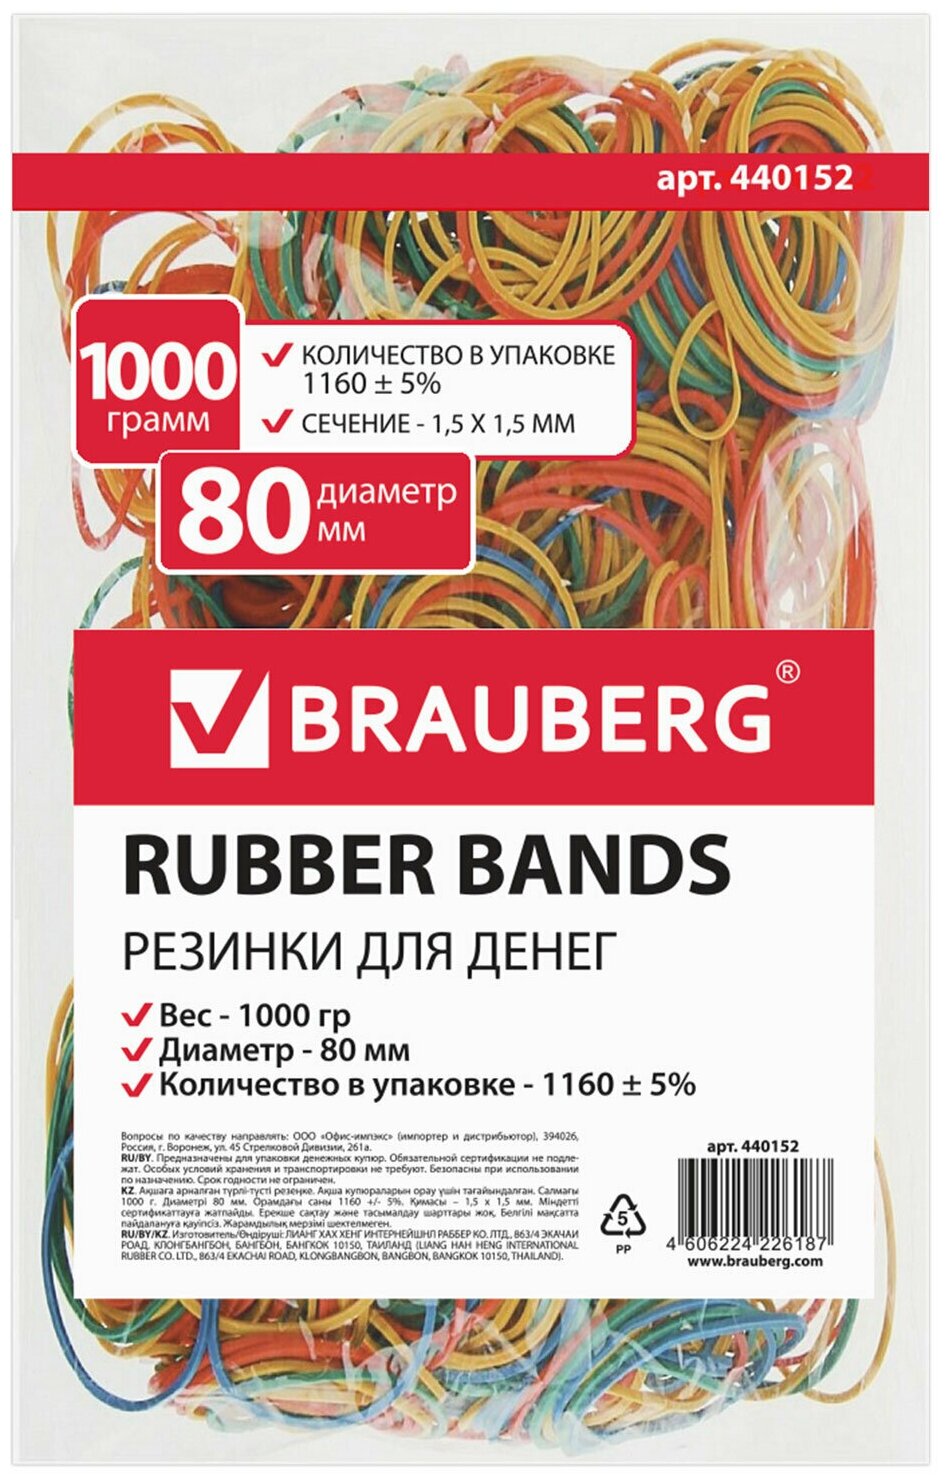 Резинки банковские универсальные диаметром 80 мм, BRAUBERG 1000 г, цветные, натуральный каучук, 440152